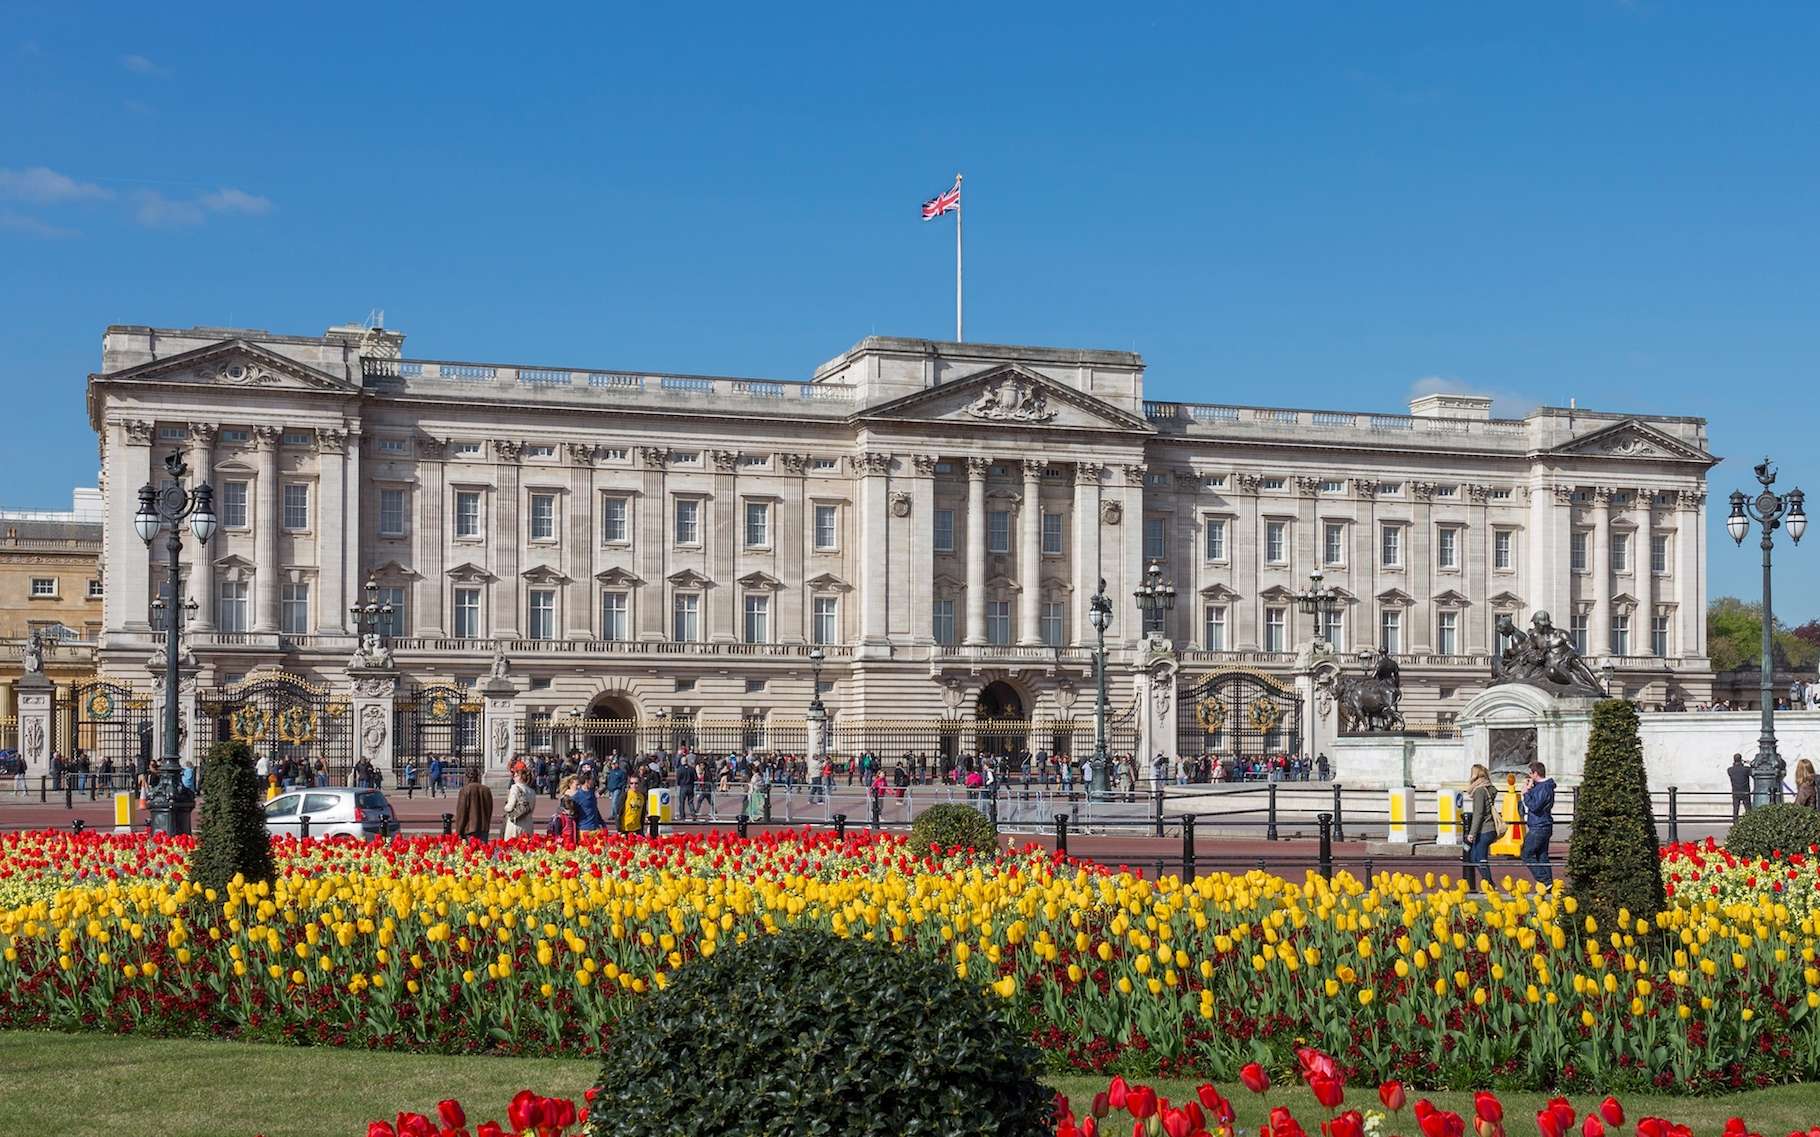 Bientôt des panneaux solaires au palais de Buckingham ?